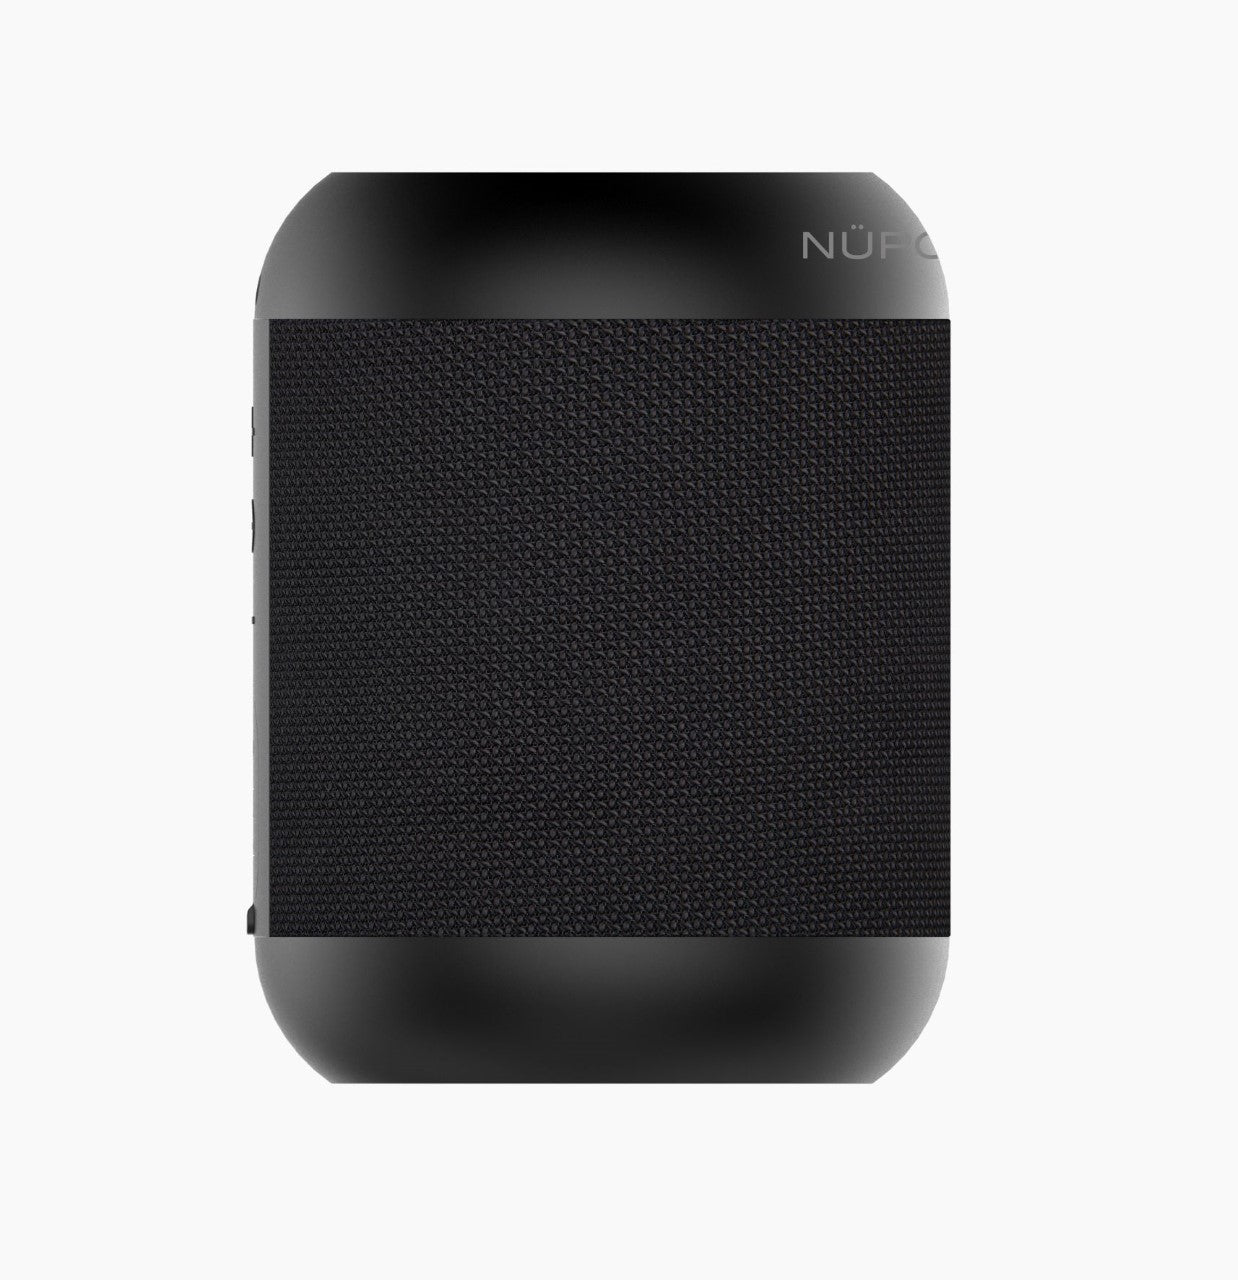 NüPower Portable Bluetooth Speaker